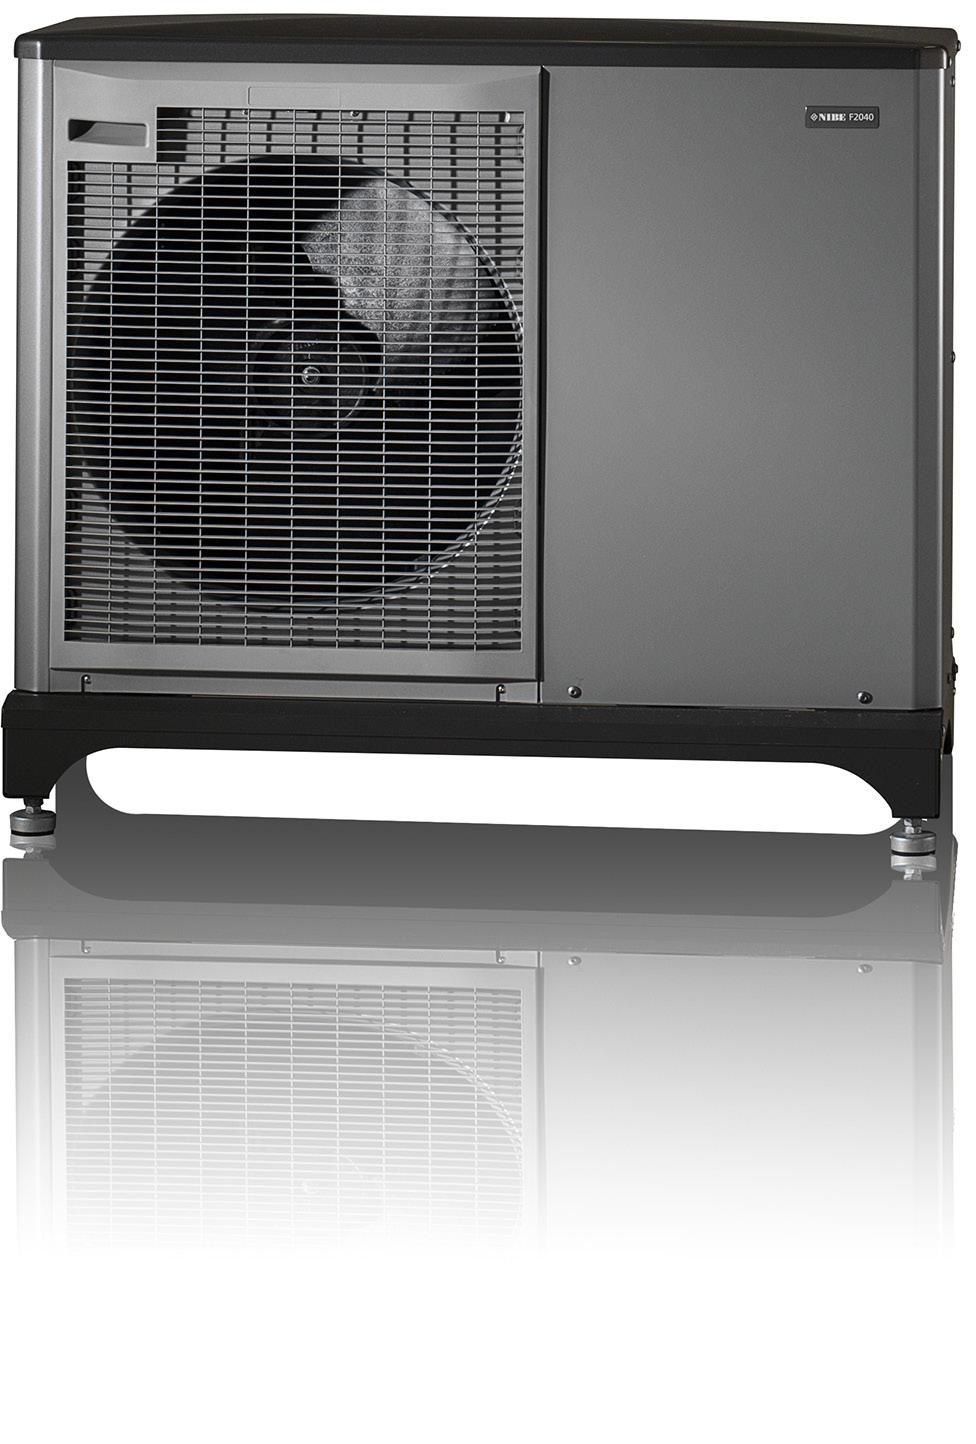 1 Popis tepelného čerpadla F2040 Tepelné čerpadlo NIBE F2040 je kompaktní tepelné čerpadlo systému vzduch - voda pro vytápění a ohřev teplé vody malých a středních domů.